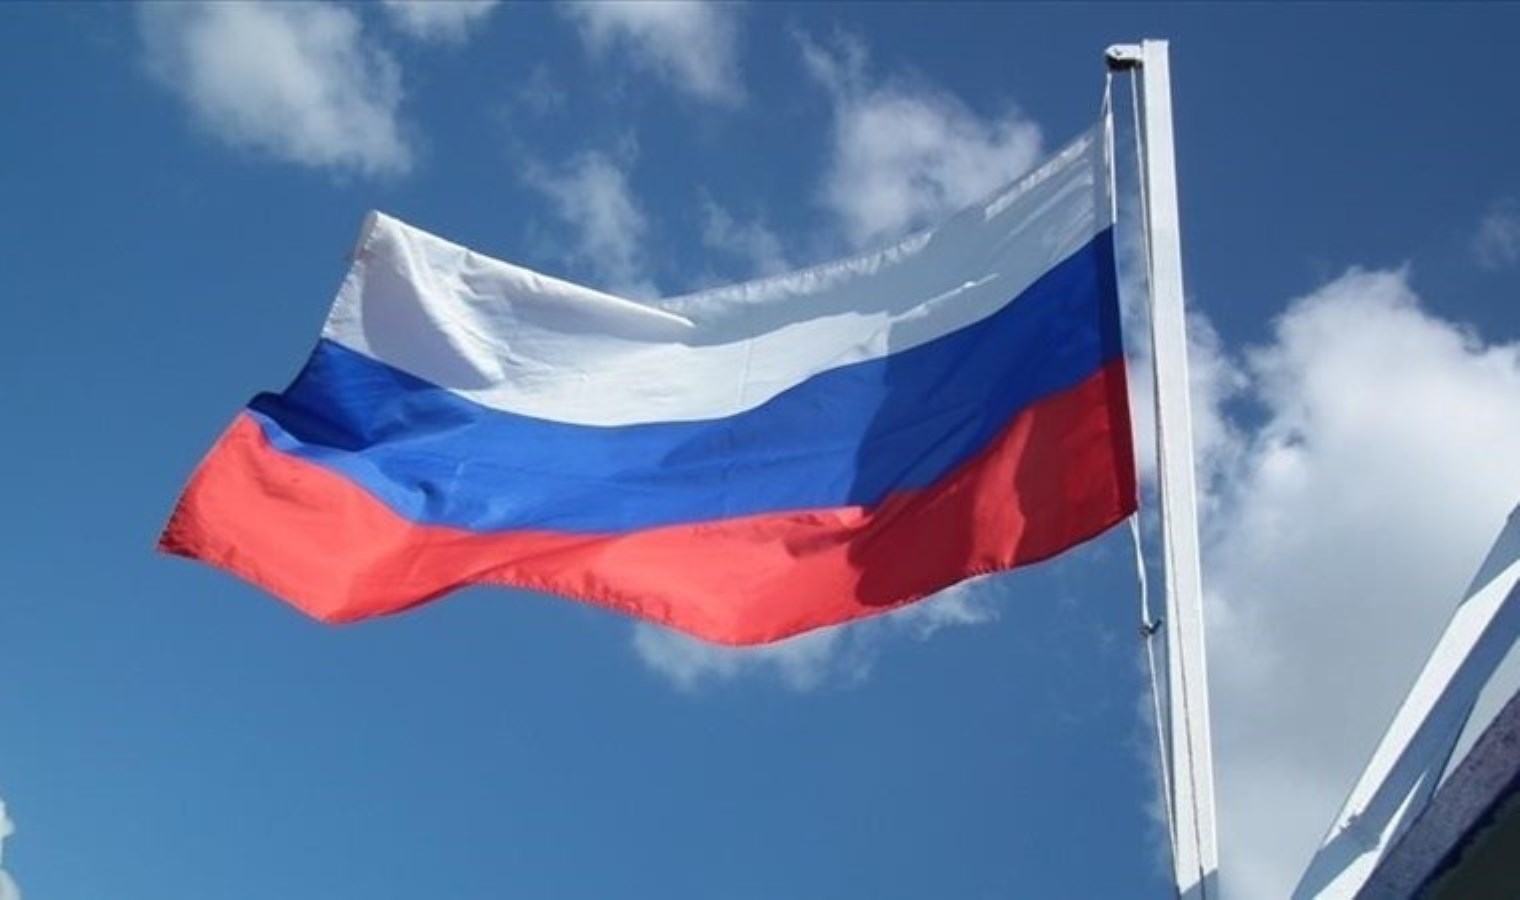 Rusya, döviz gelirlerini satma zorunluluğunu hafifletti